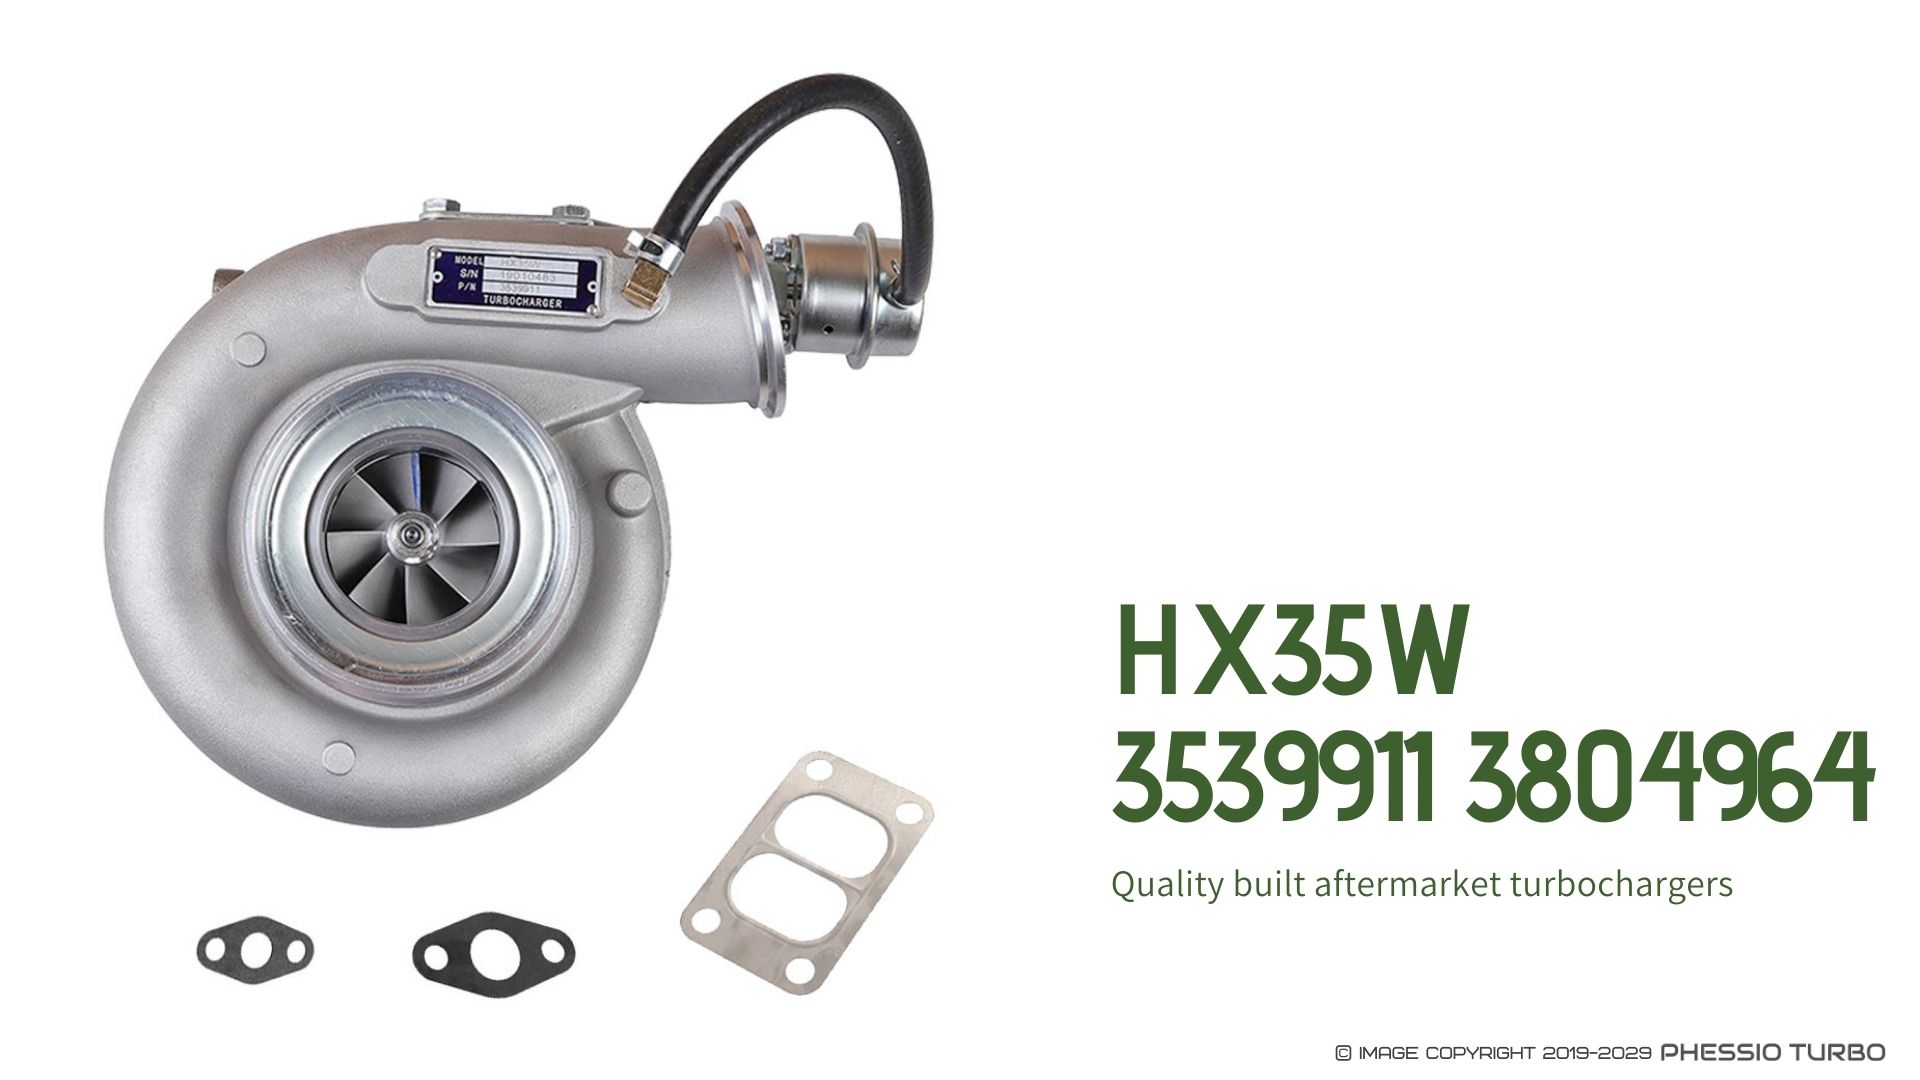 HX35W 3539911 Turbocharger